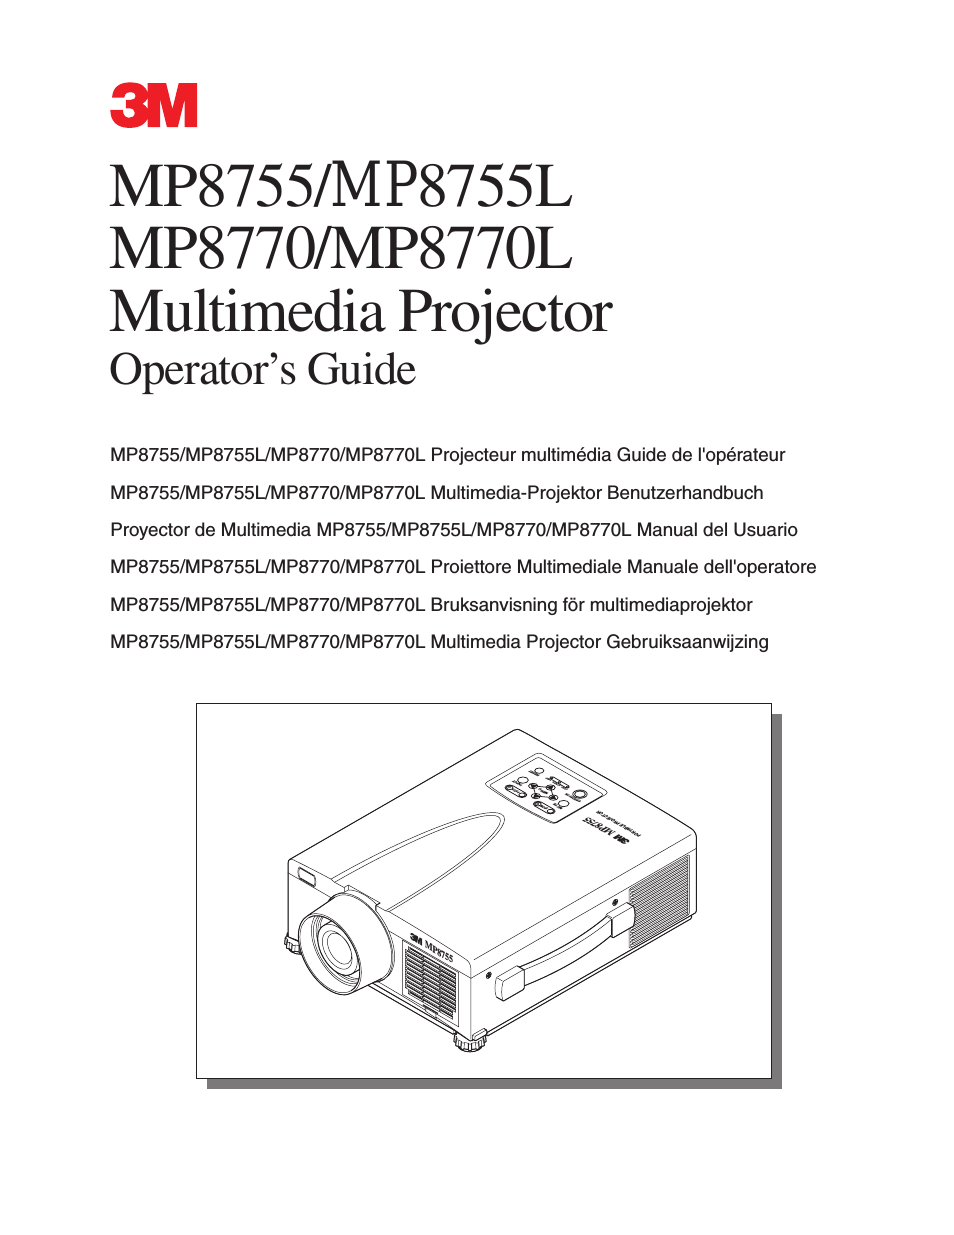 MP8770/MP8770L (Page 1)